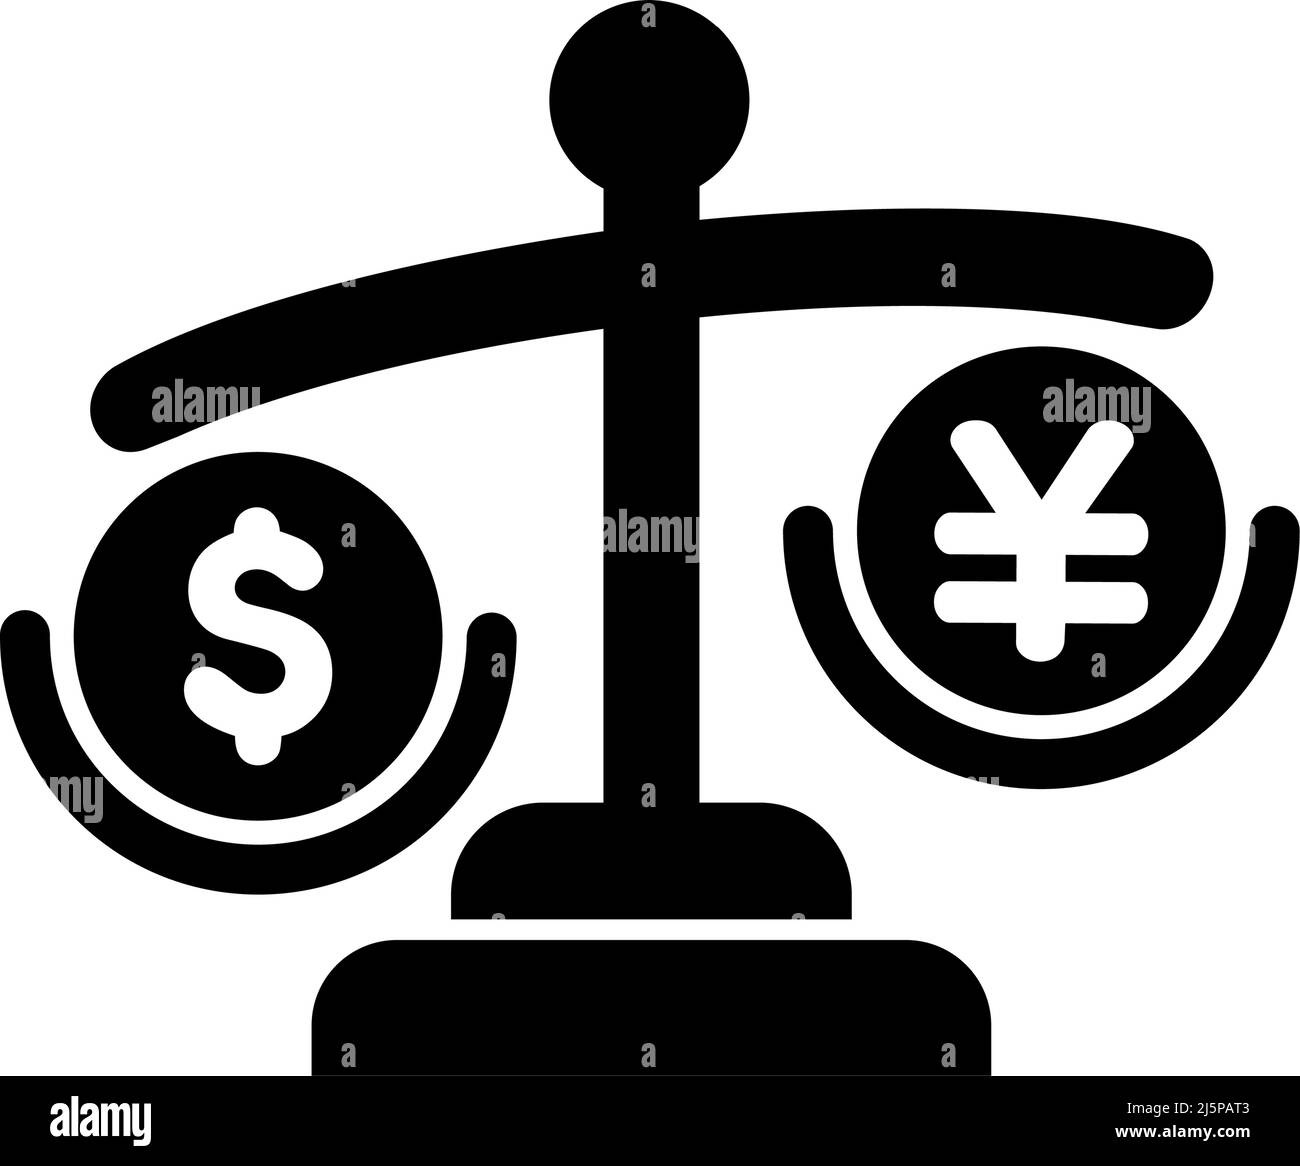 Darstellung der Vektorsymbole für die japanische Yen-Abwertung ( gegenüber dem US-Dollar) Stock Vektor